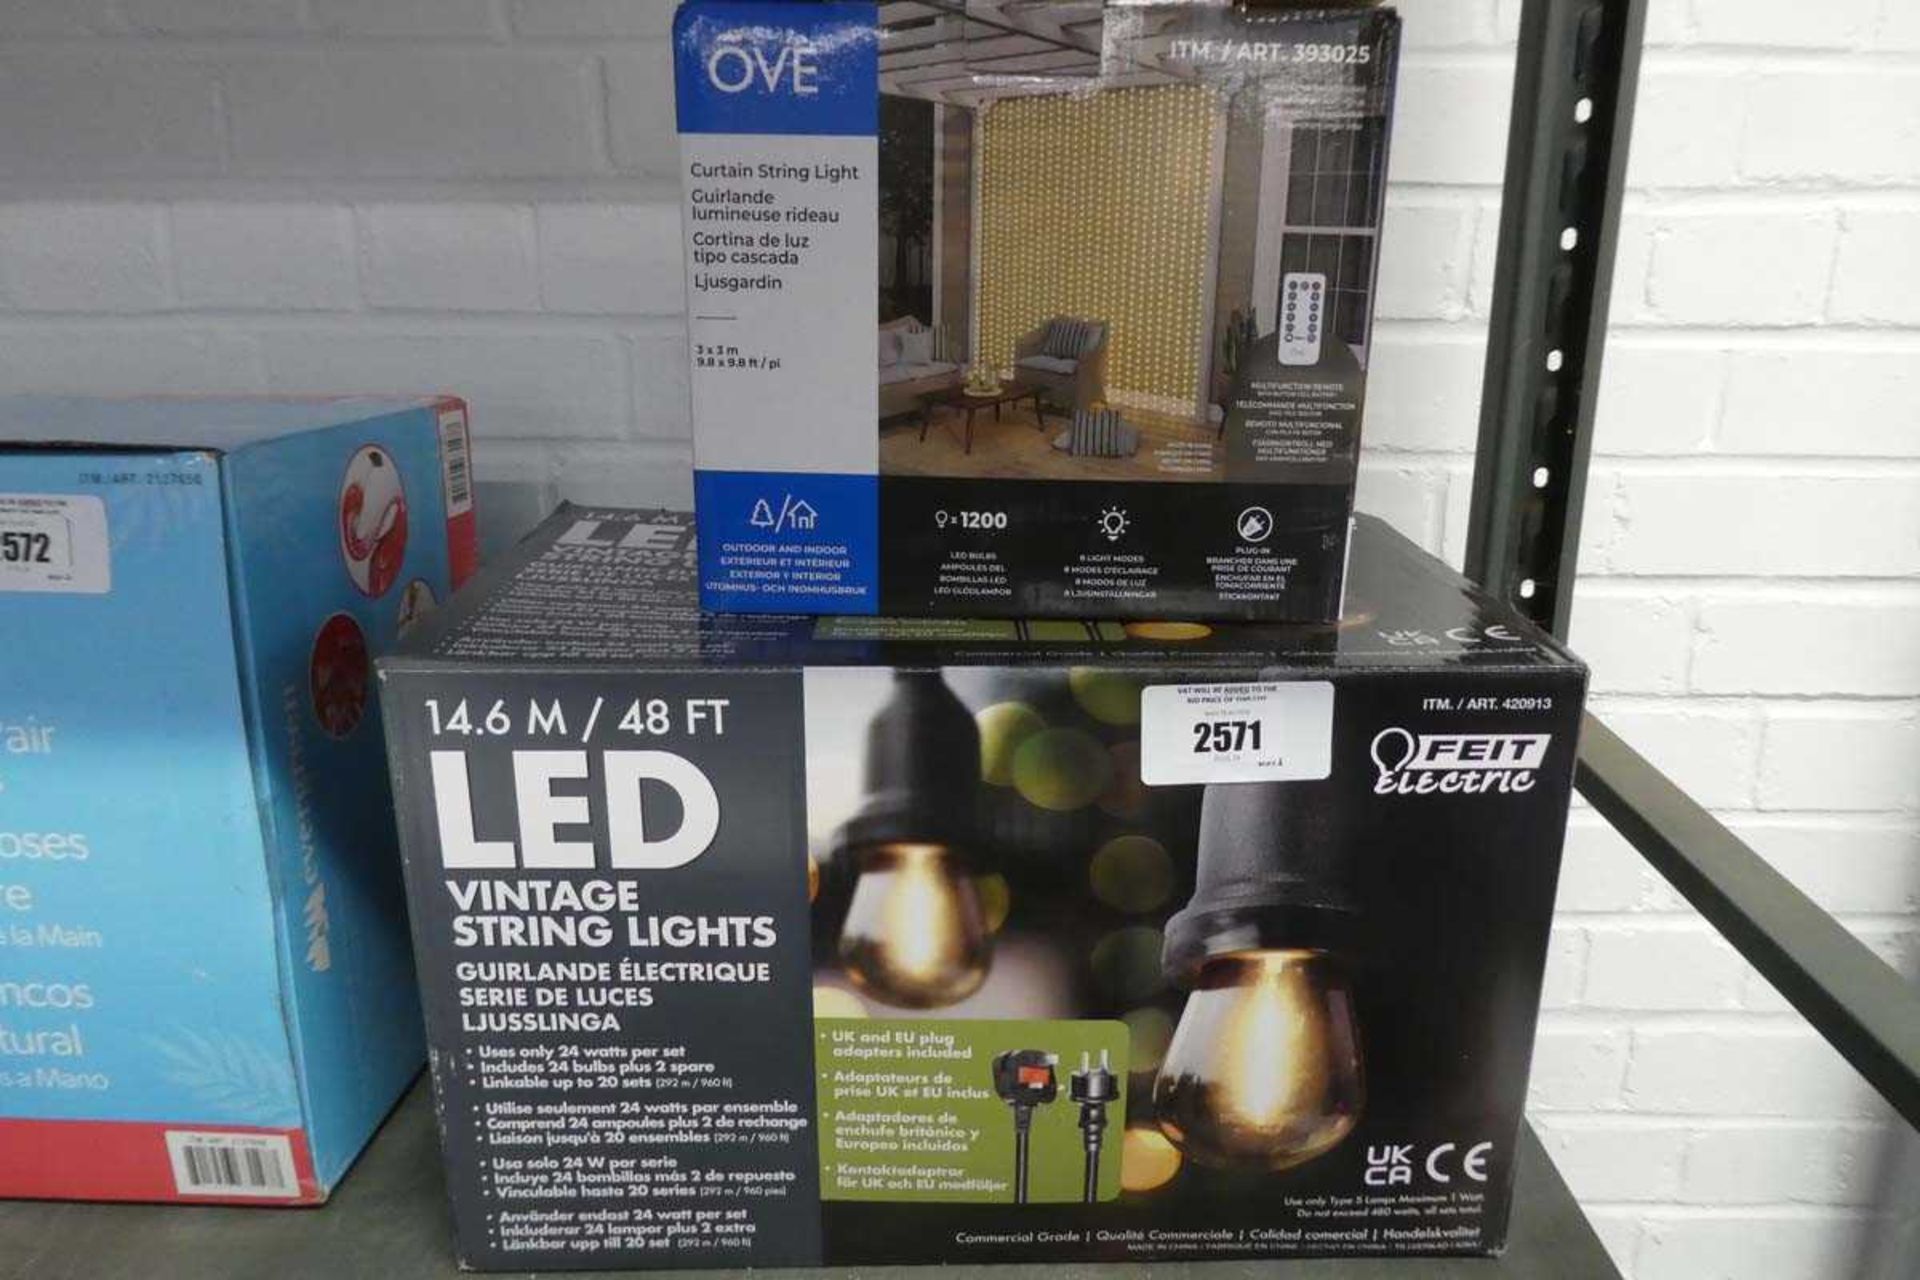 +VAT Boxed set of garden LED vintage string lights with OBE outdoor string lights